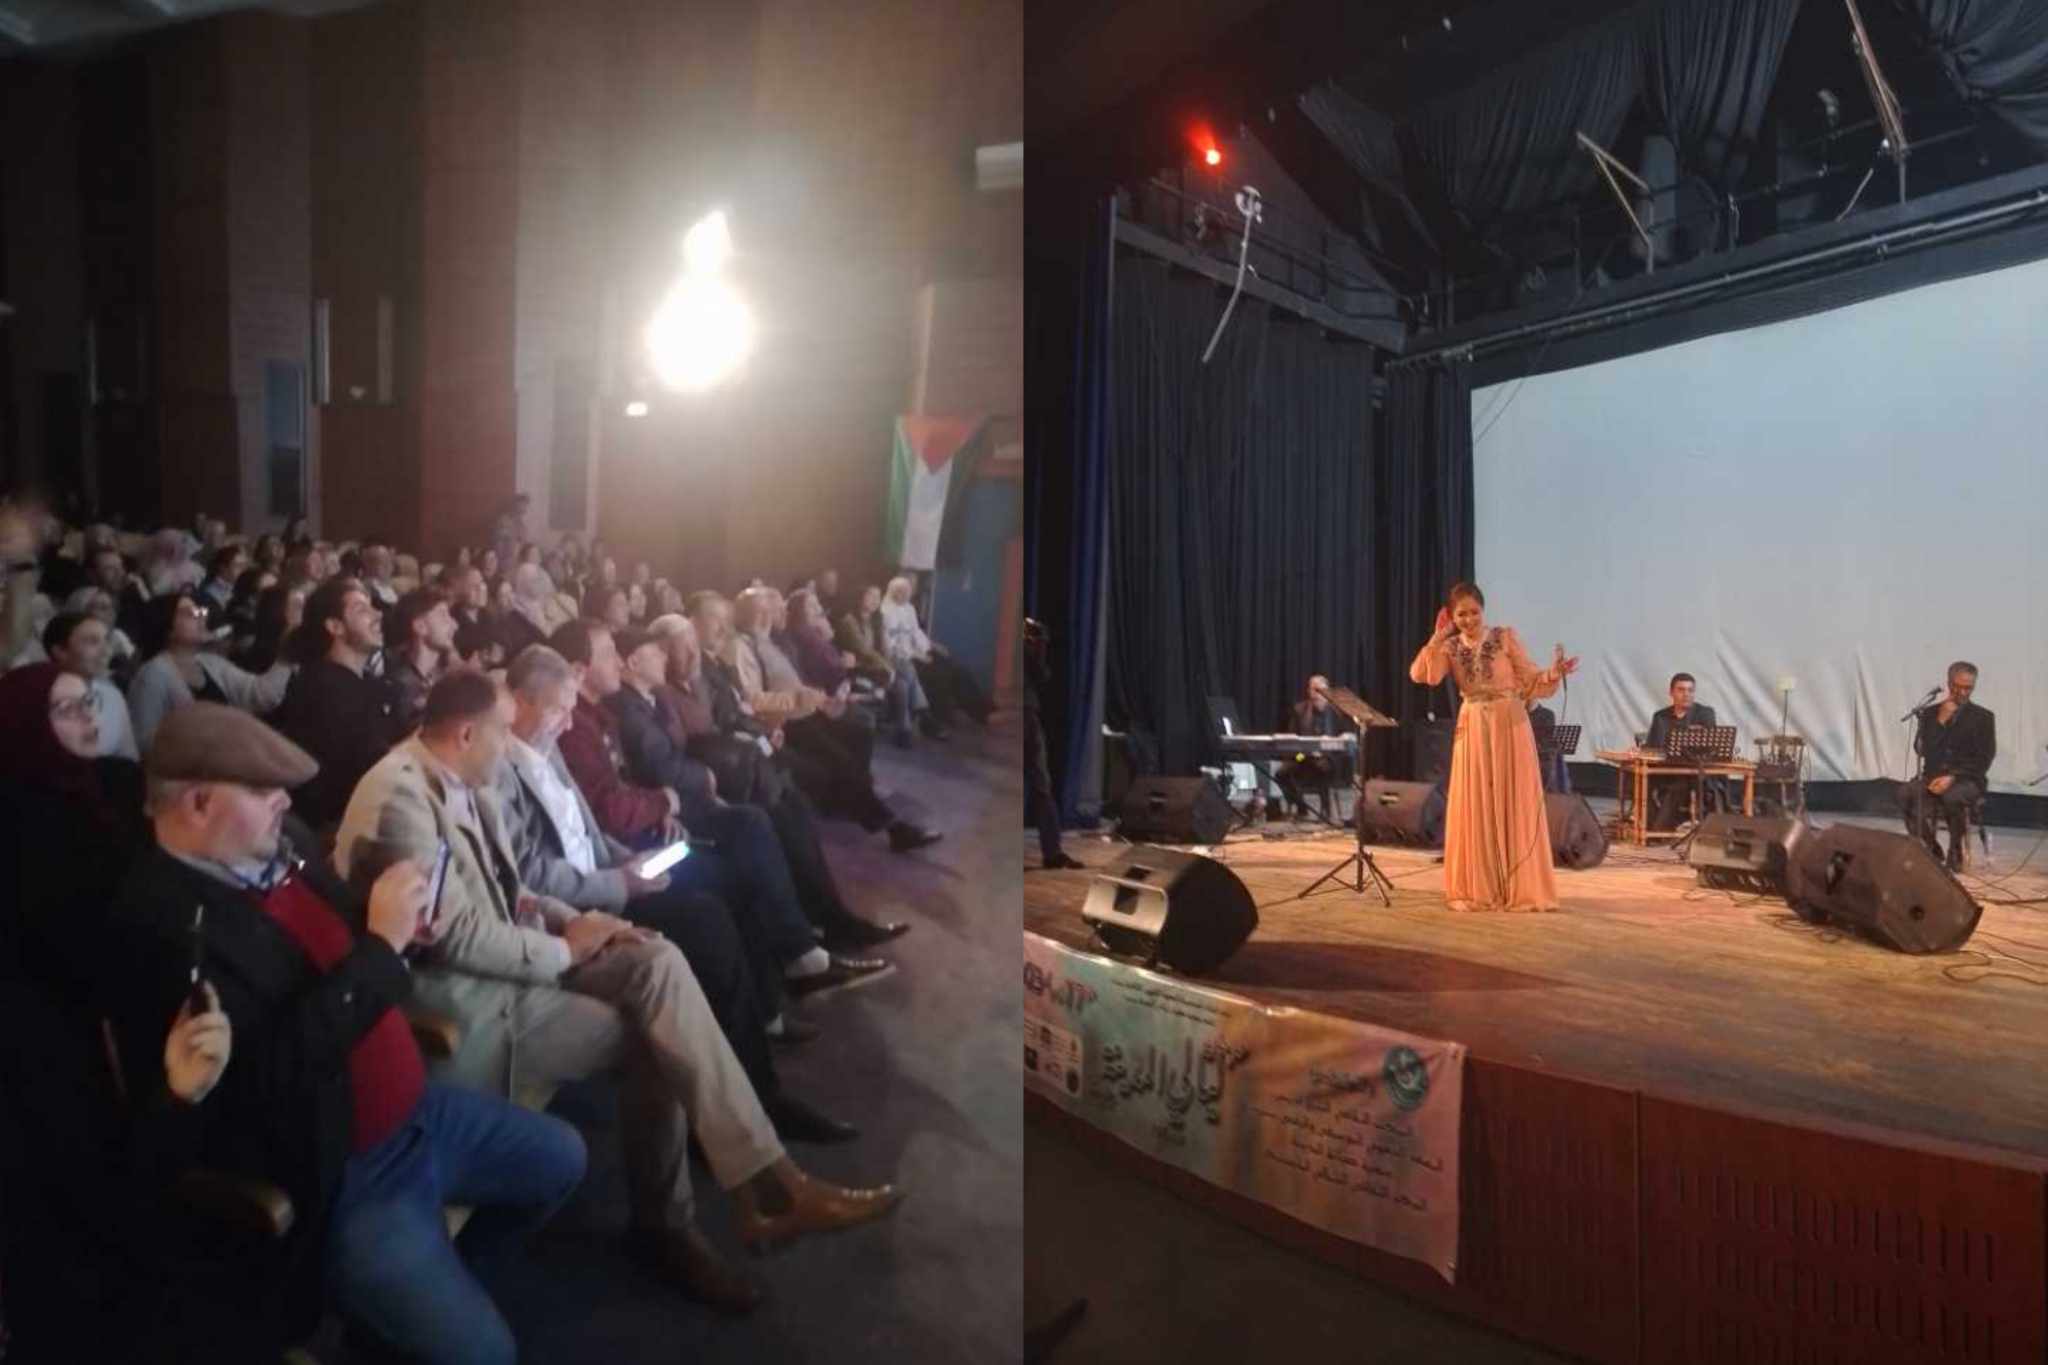 صور/ إختتام مهرجان ليالي المدينة ببنزرت بعرض موسيقي للفنانة محرزية الطويل 